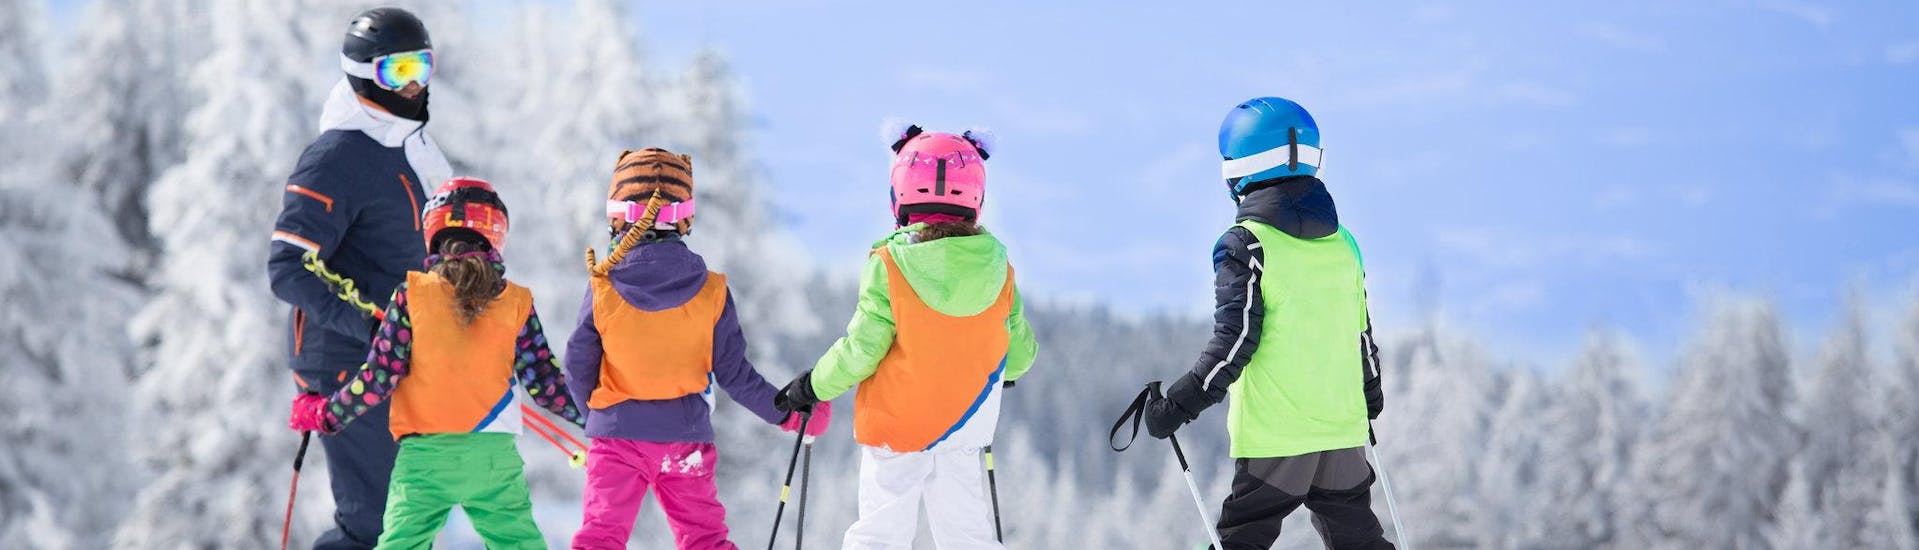 3 skieurs se préparent avant un cours de ski en anglais dans la destination de ski Les Portes du Soleil.